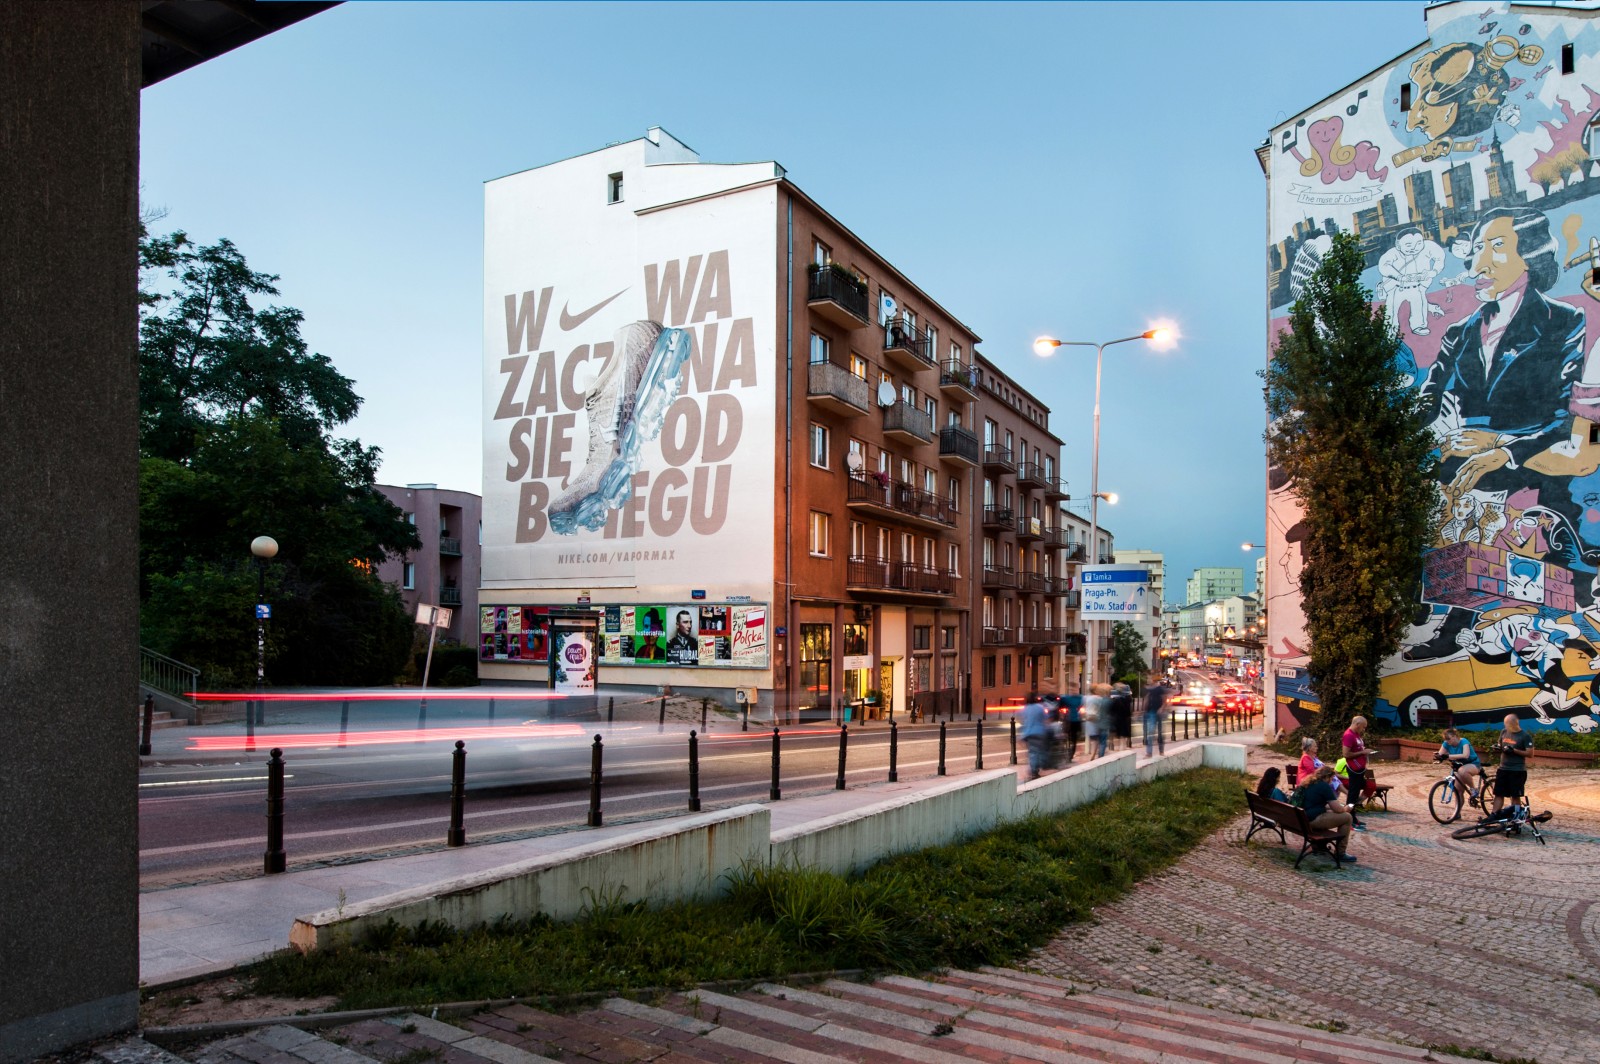 Mural reklamowy dla Nike w Warszawie na Tamce | Nike Vapormax | Portfolio